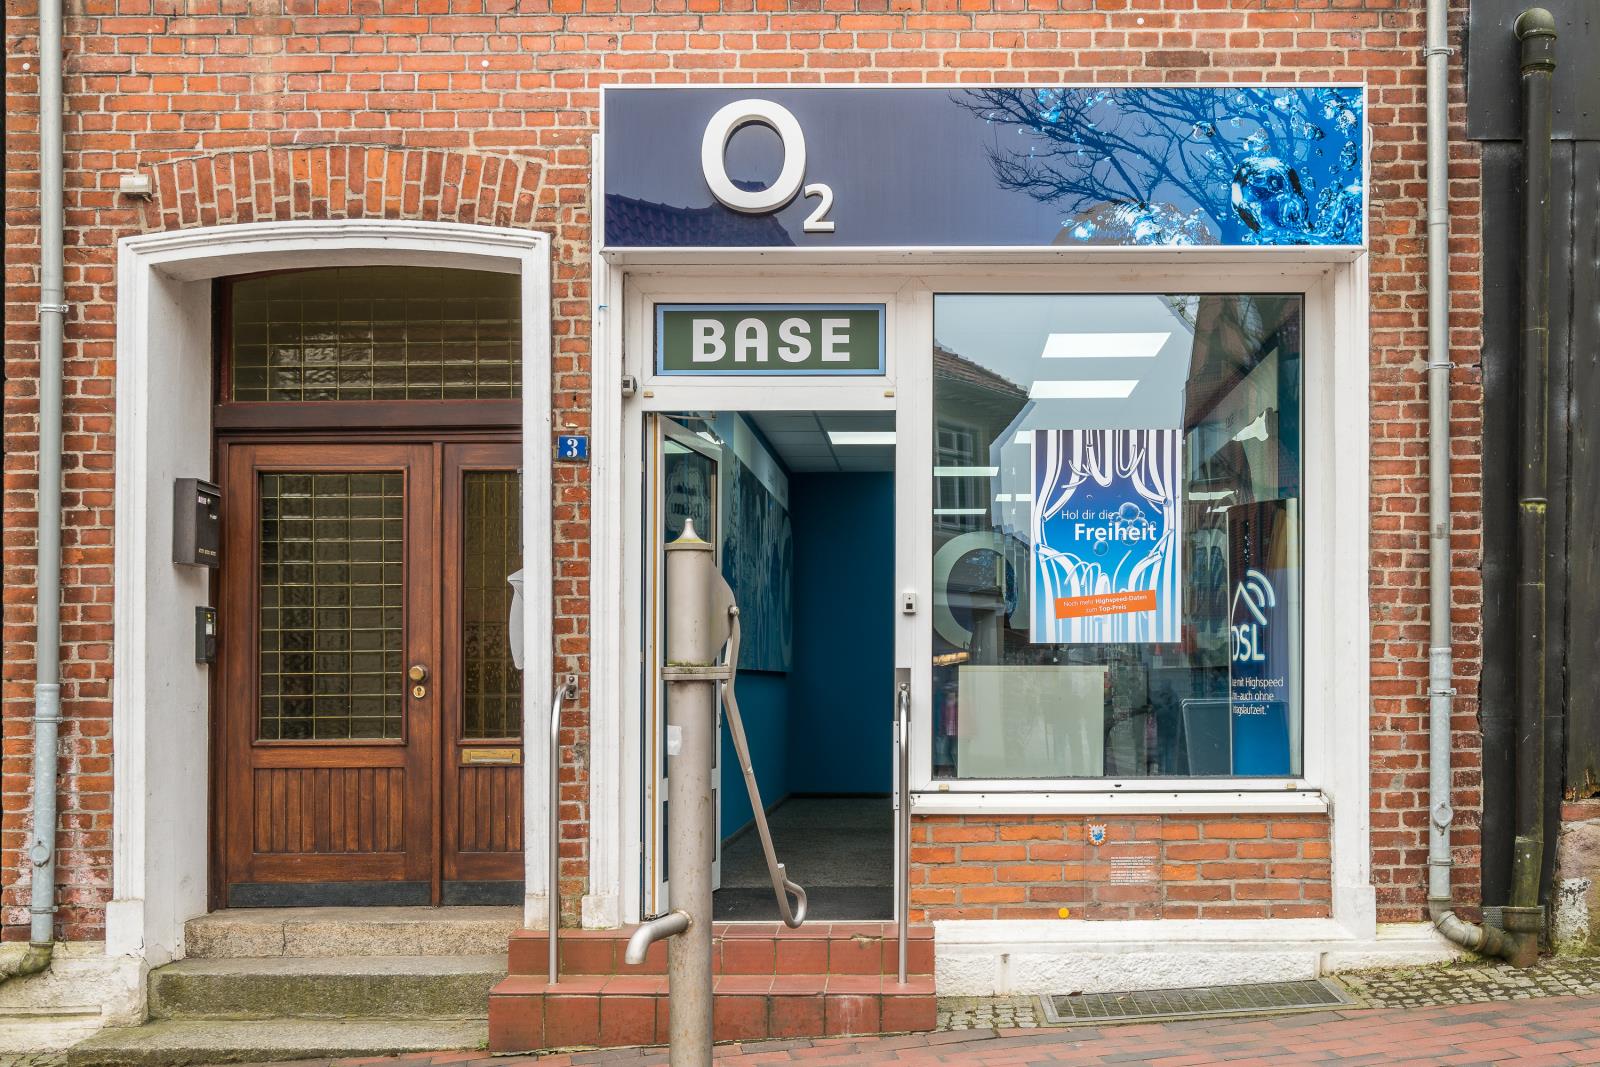 o2 Shop, Hude 3 in Bad Oldesloe